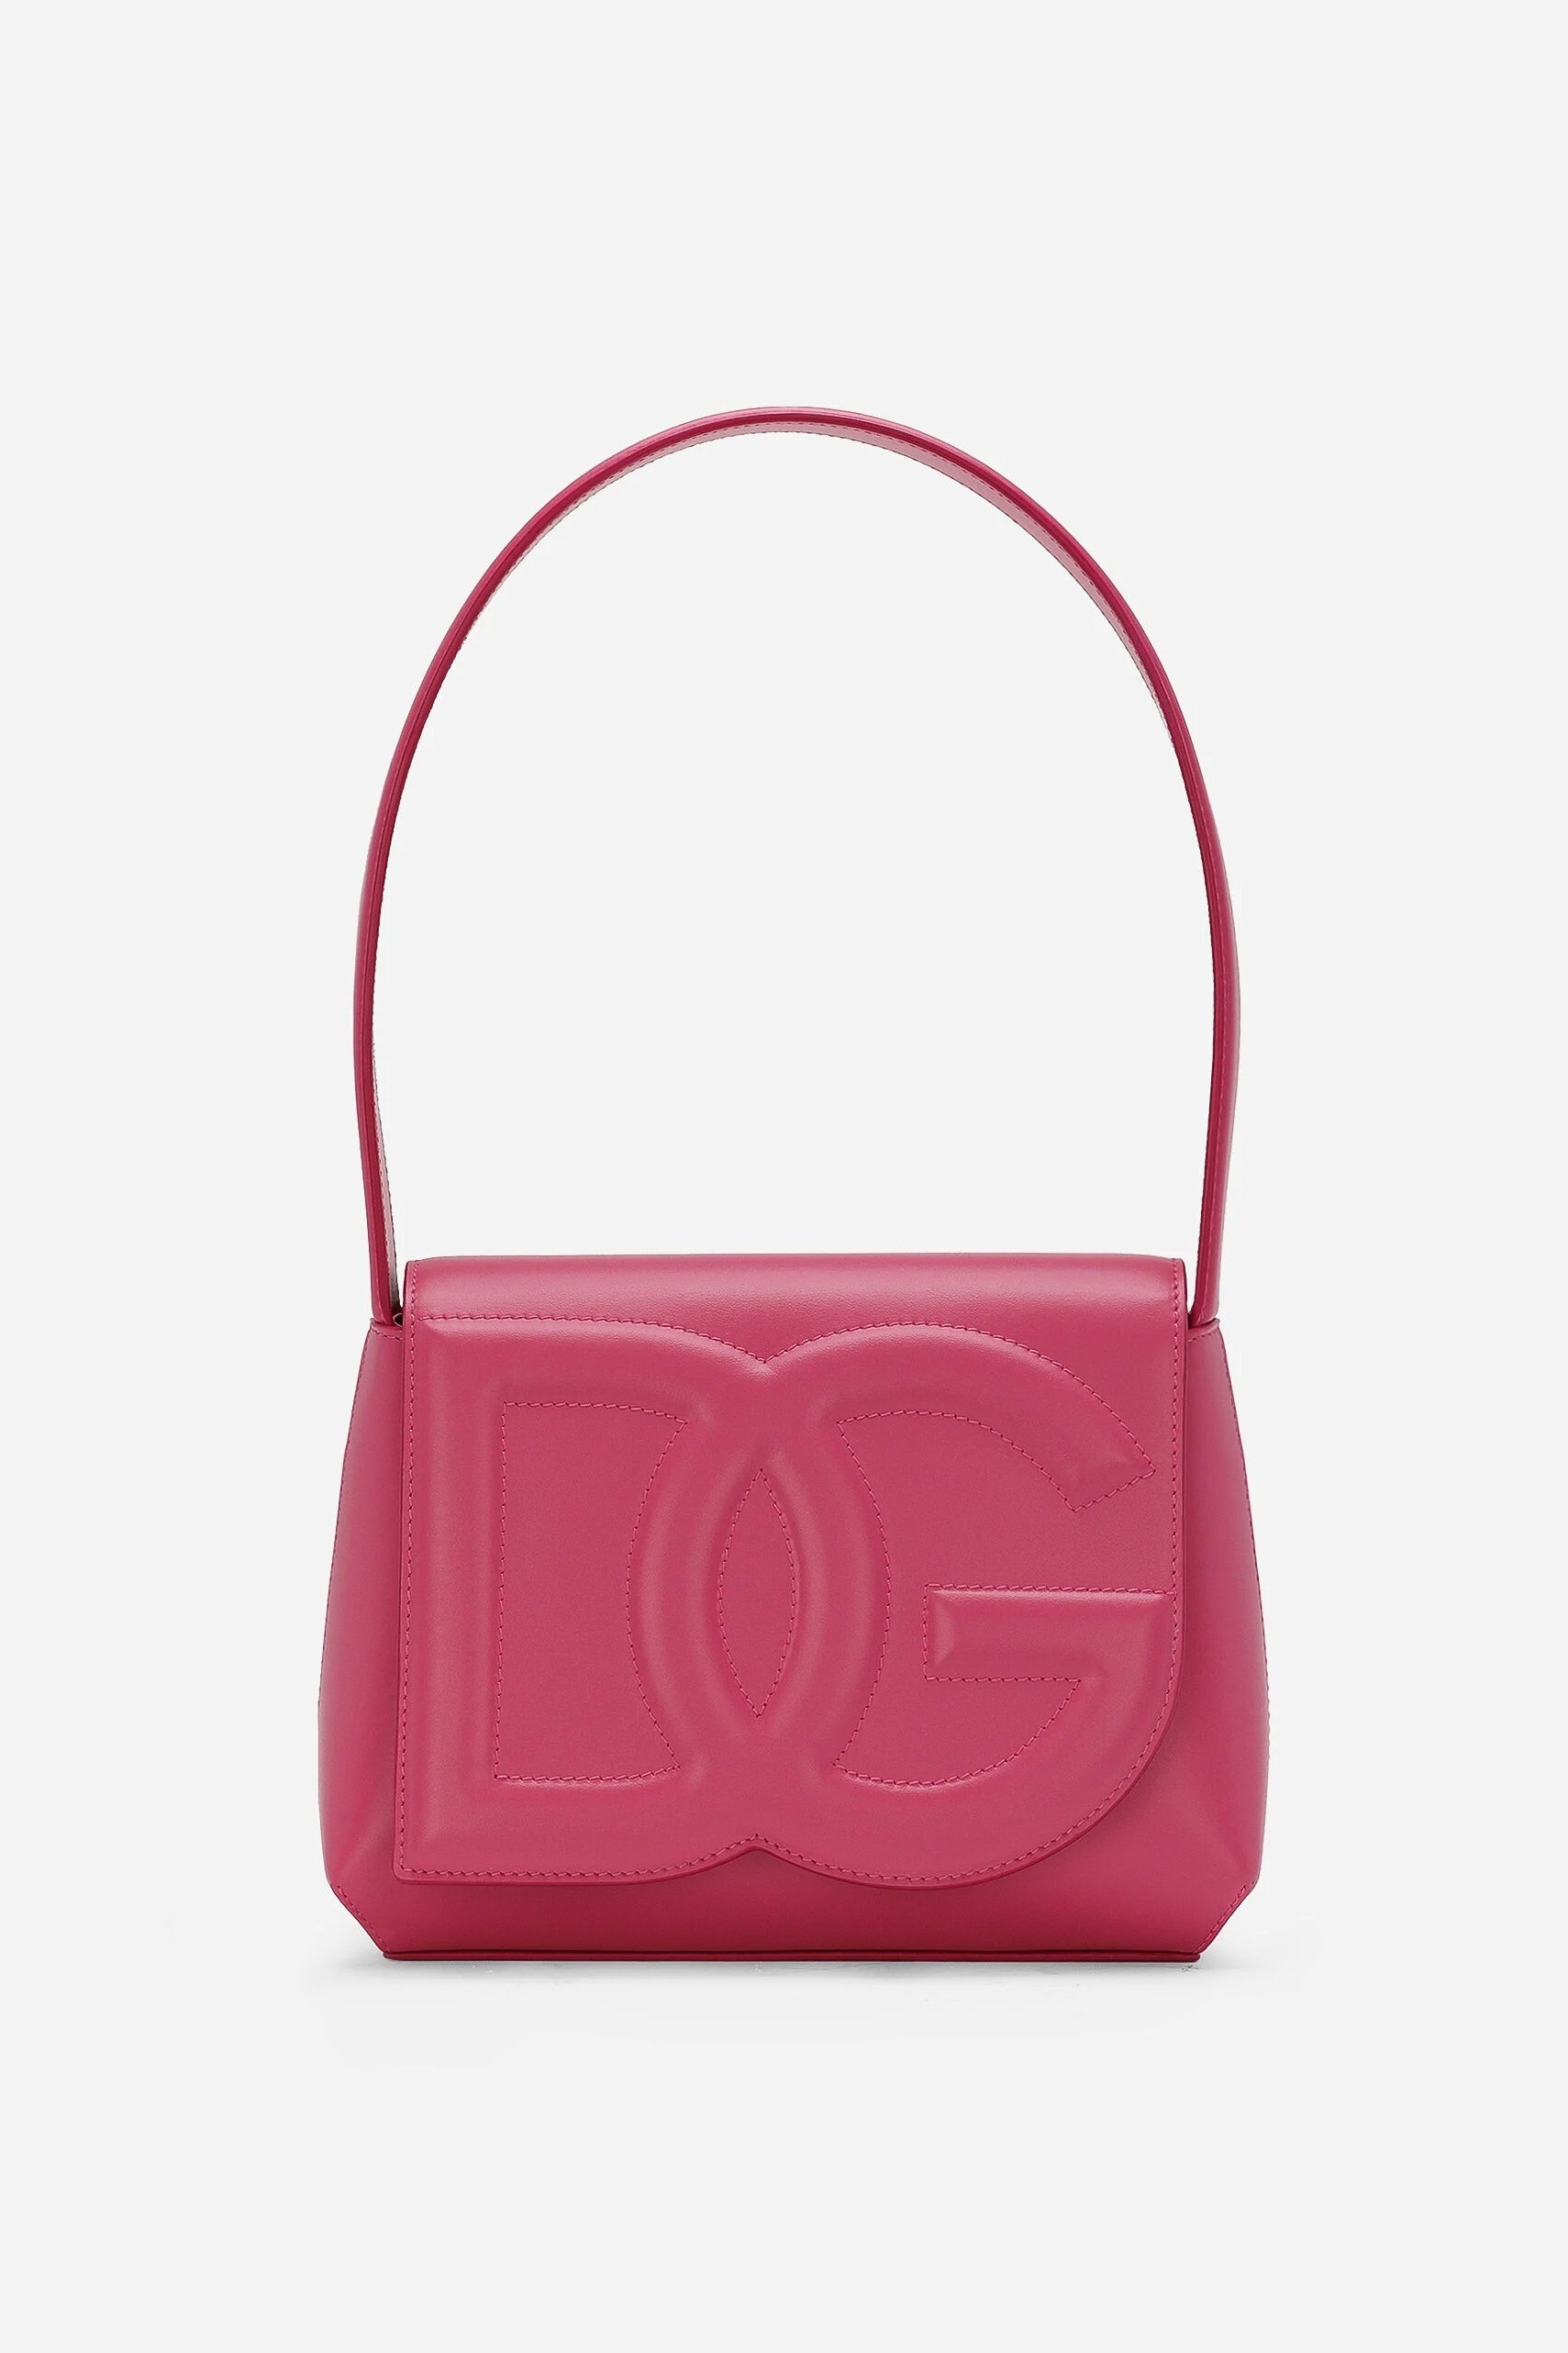 Dolce & Gabbana - DG LOGO BAG SHOULDER BAG - Pink